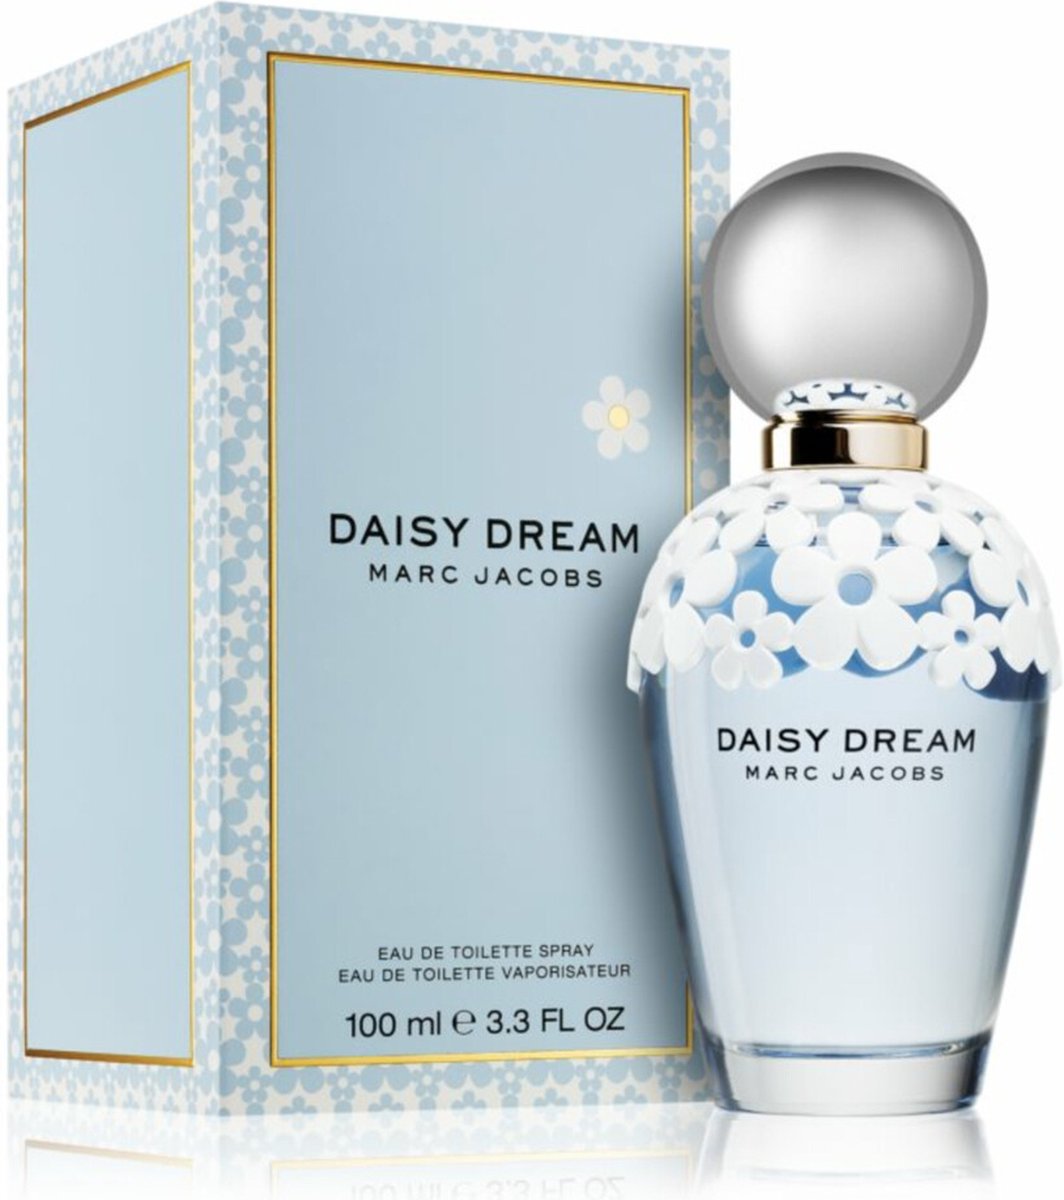 Marc Jacobs Daisy Dream 100 ml - Eau de toilette - Damesparfum - MARC JACOBS